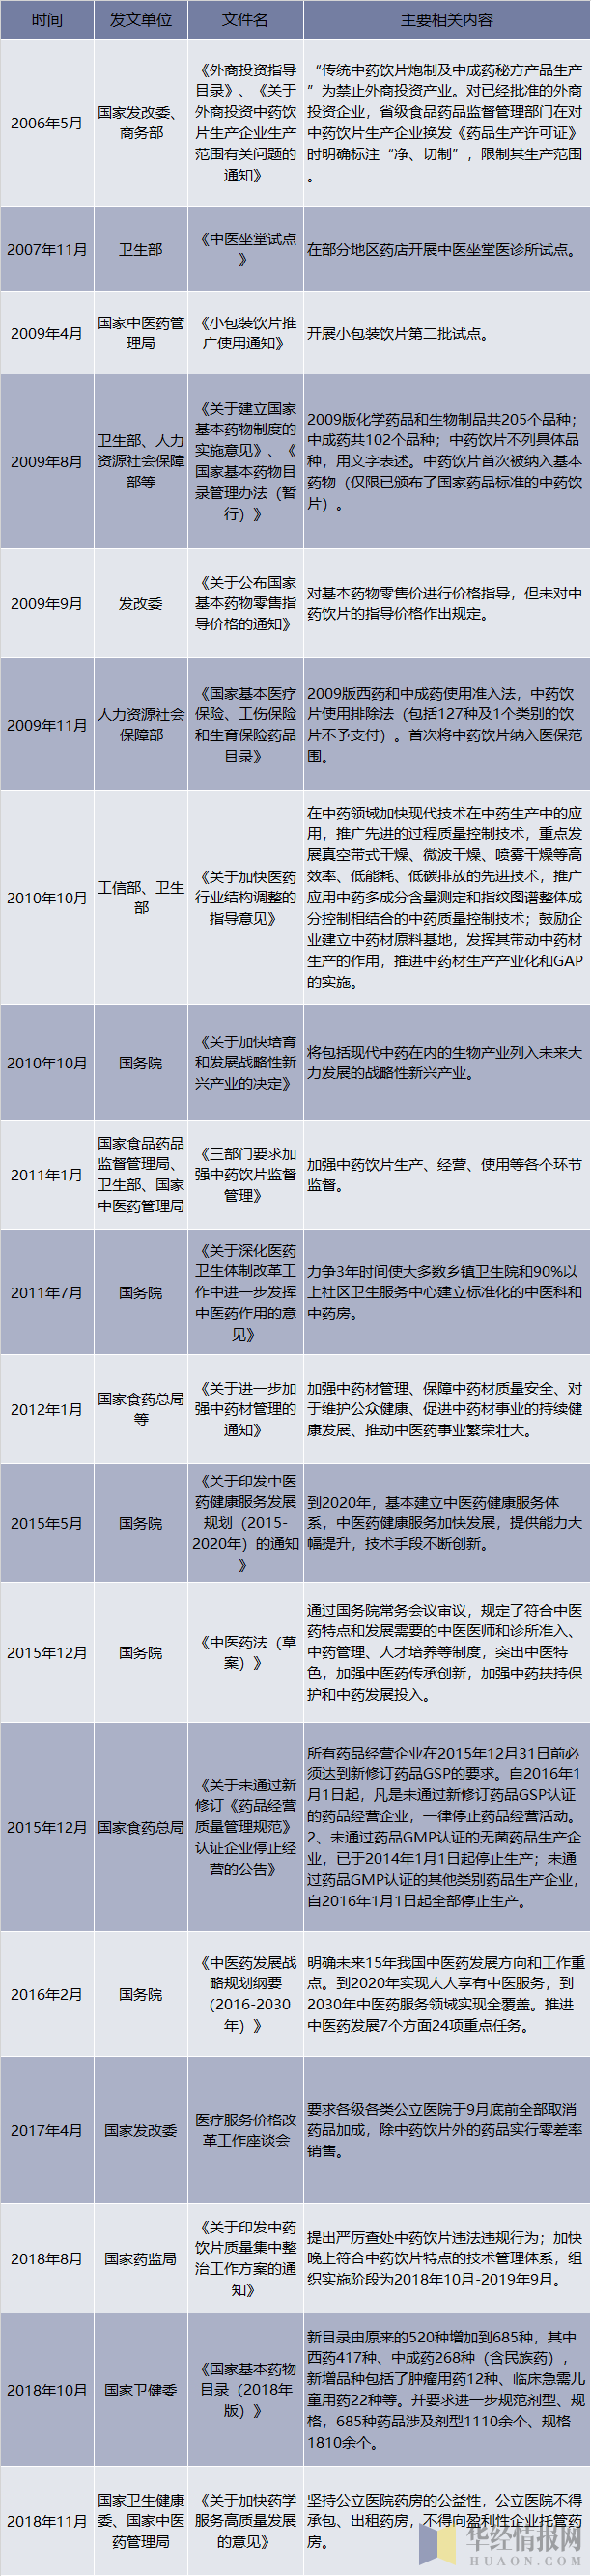 2006-2018年中国中药饮片行业相关产业政策和法规